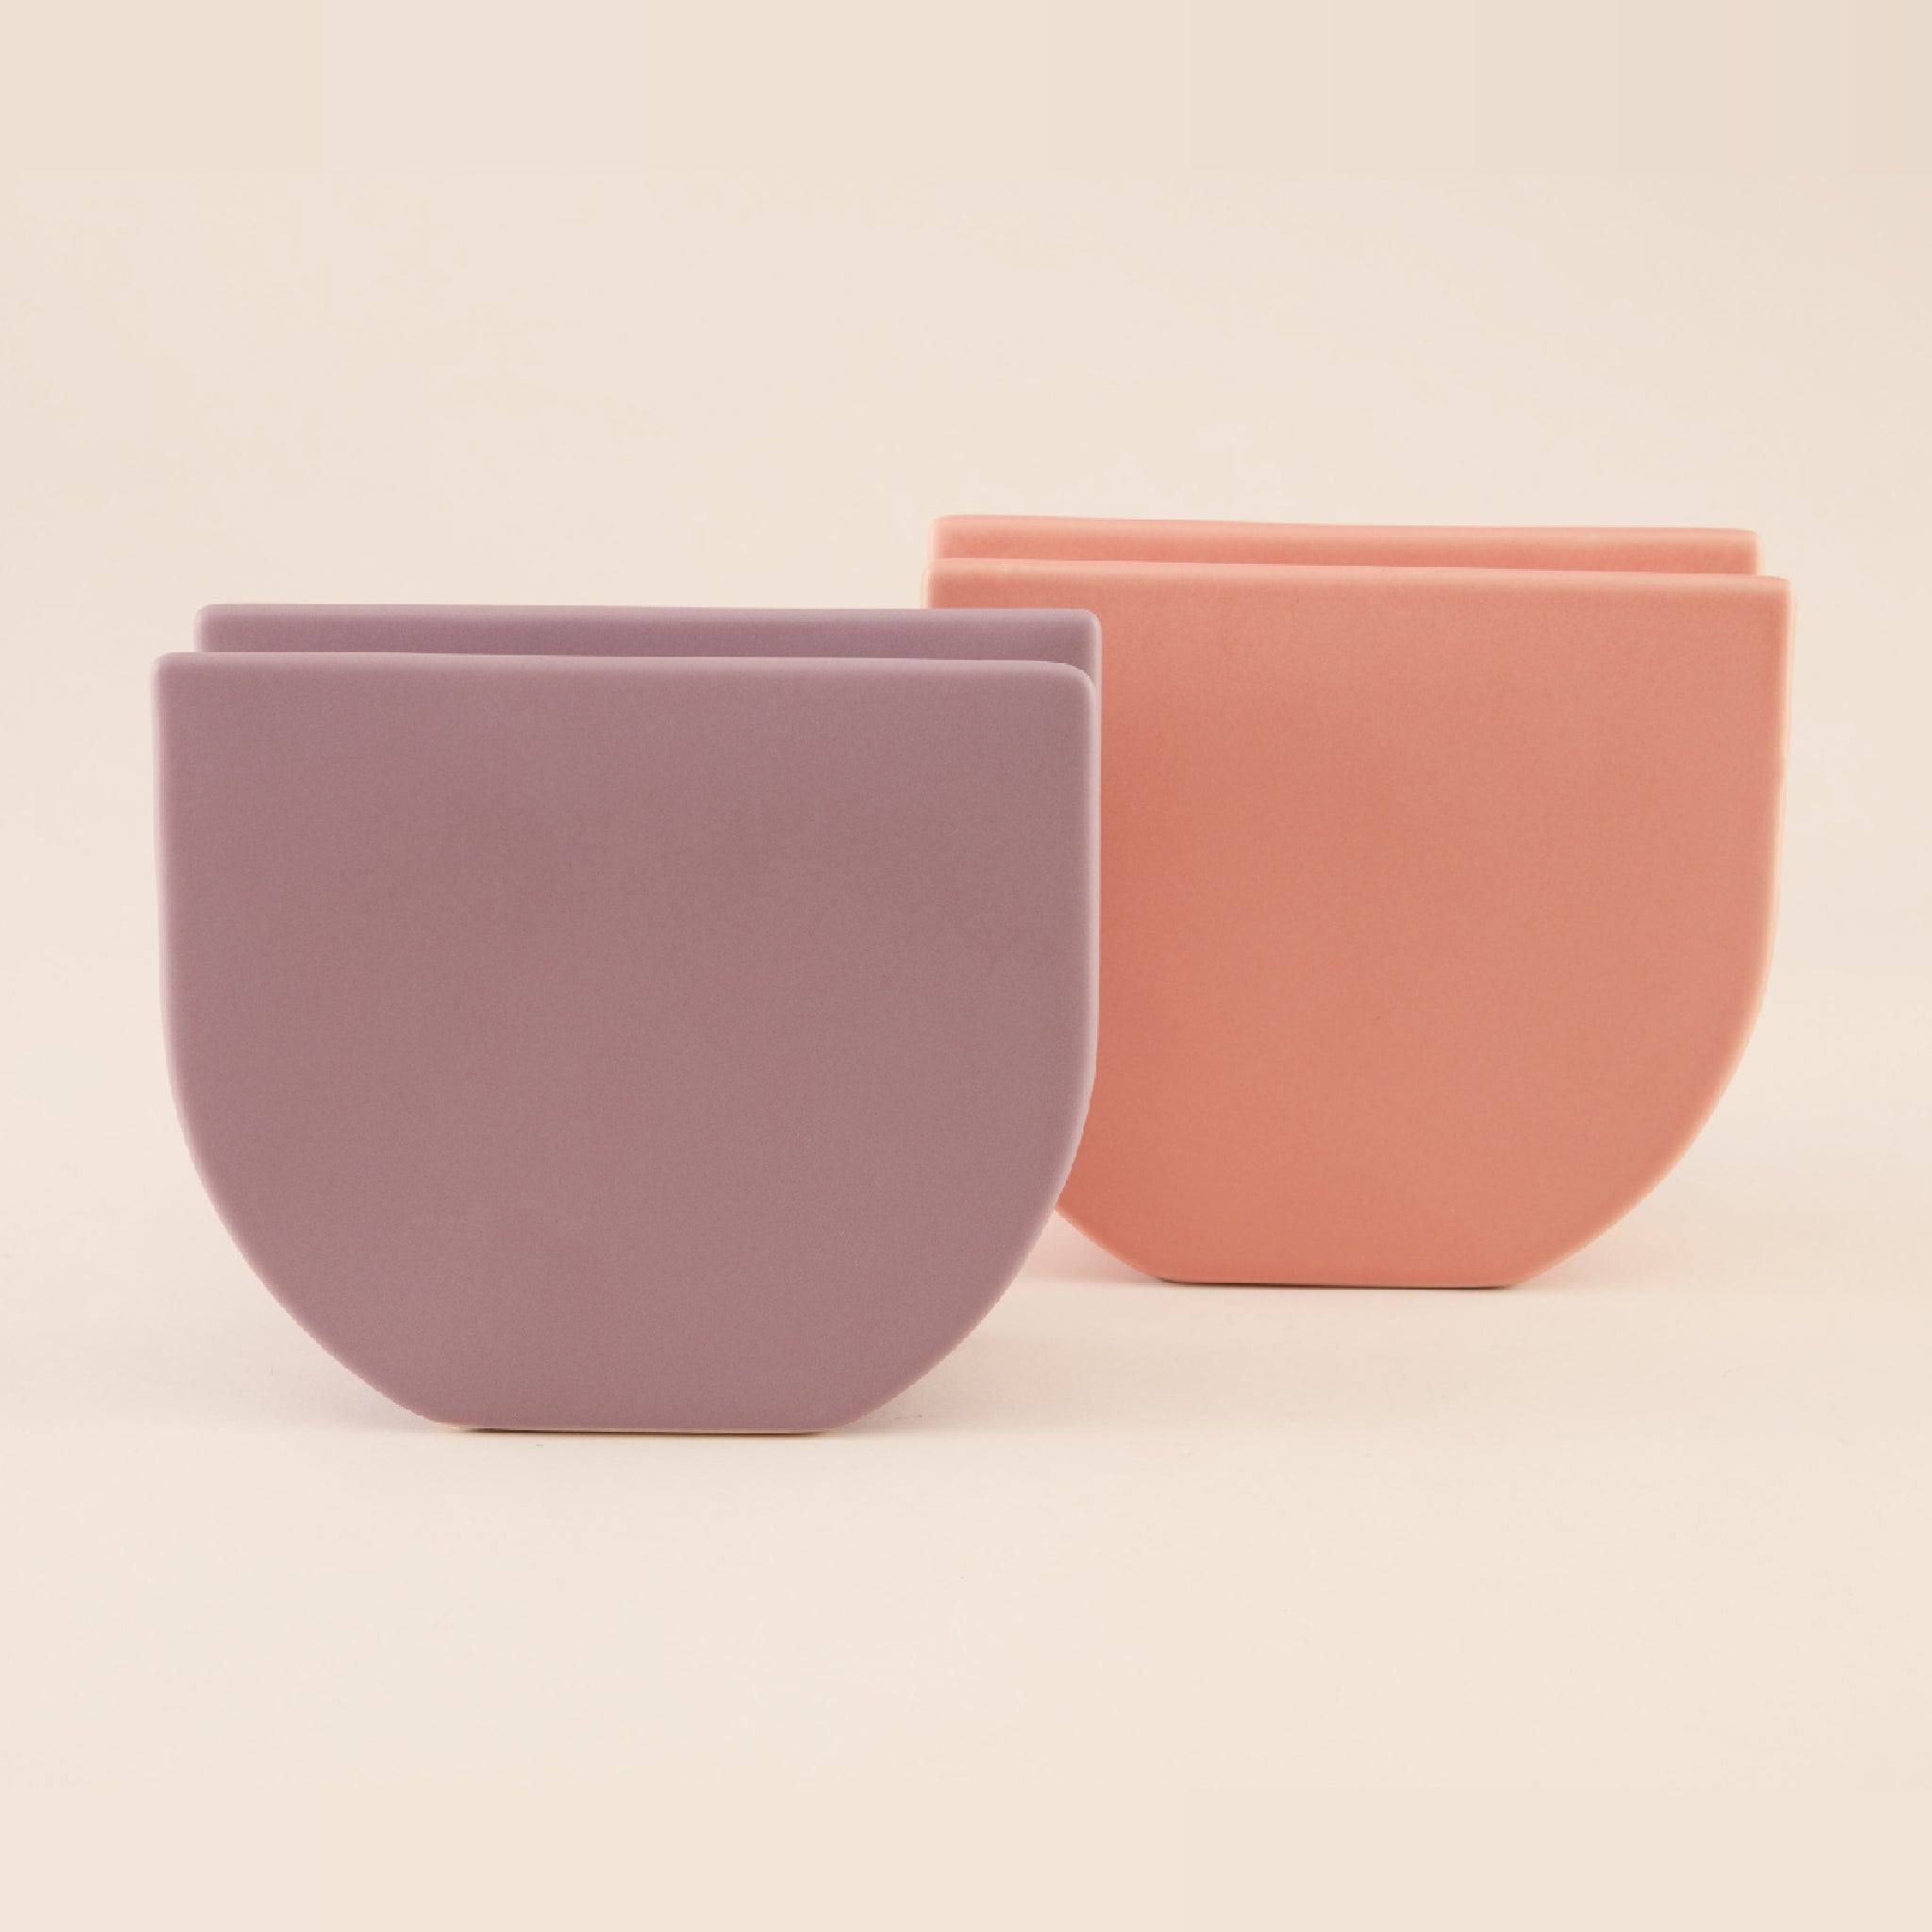 U-Shaped Ceramic Vase | แจกัน เซรามิก